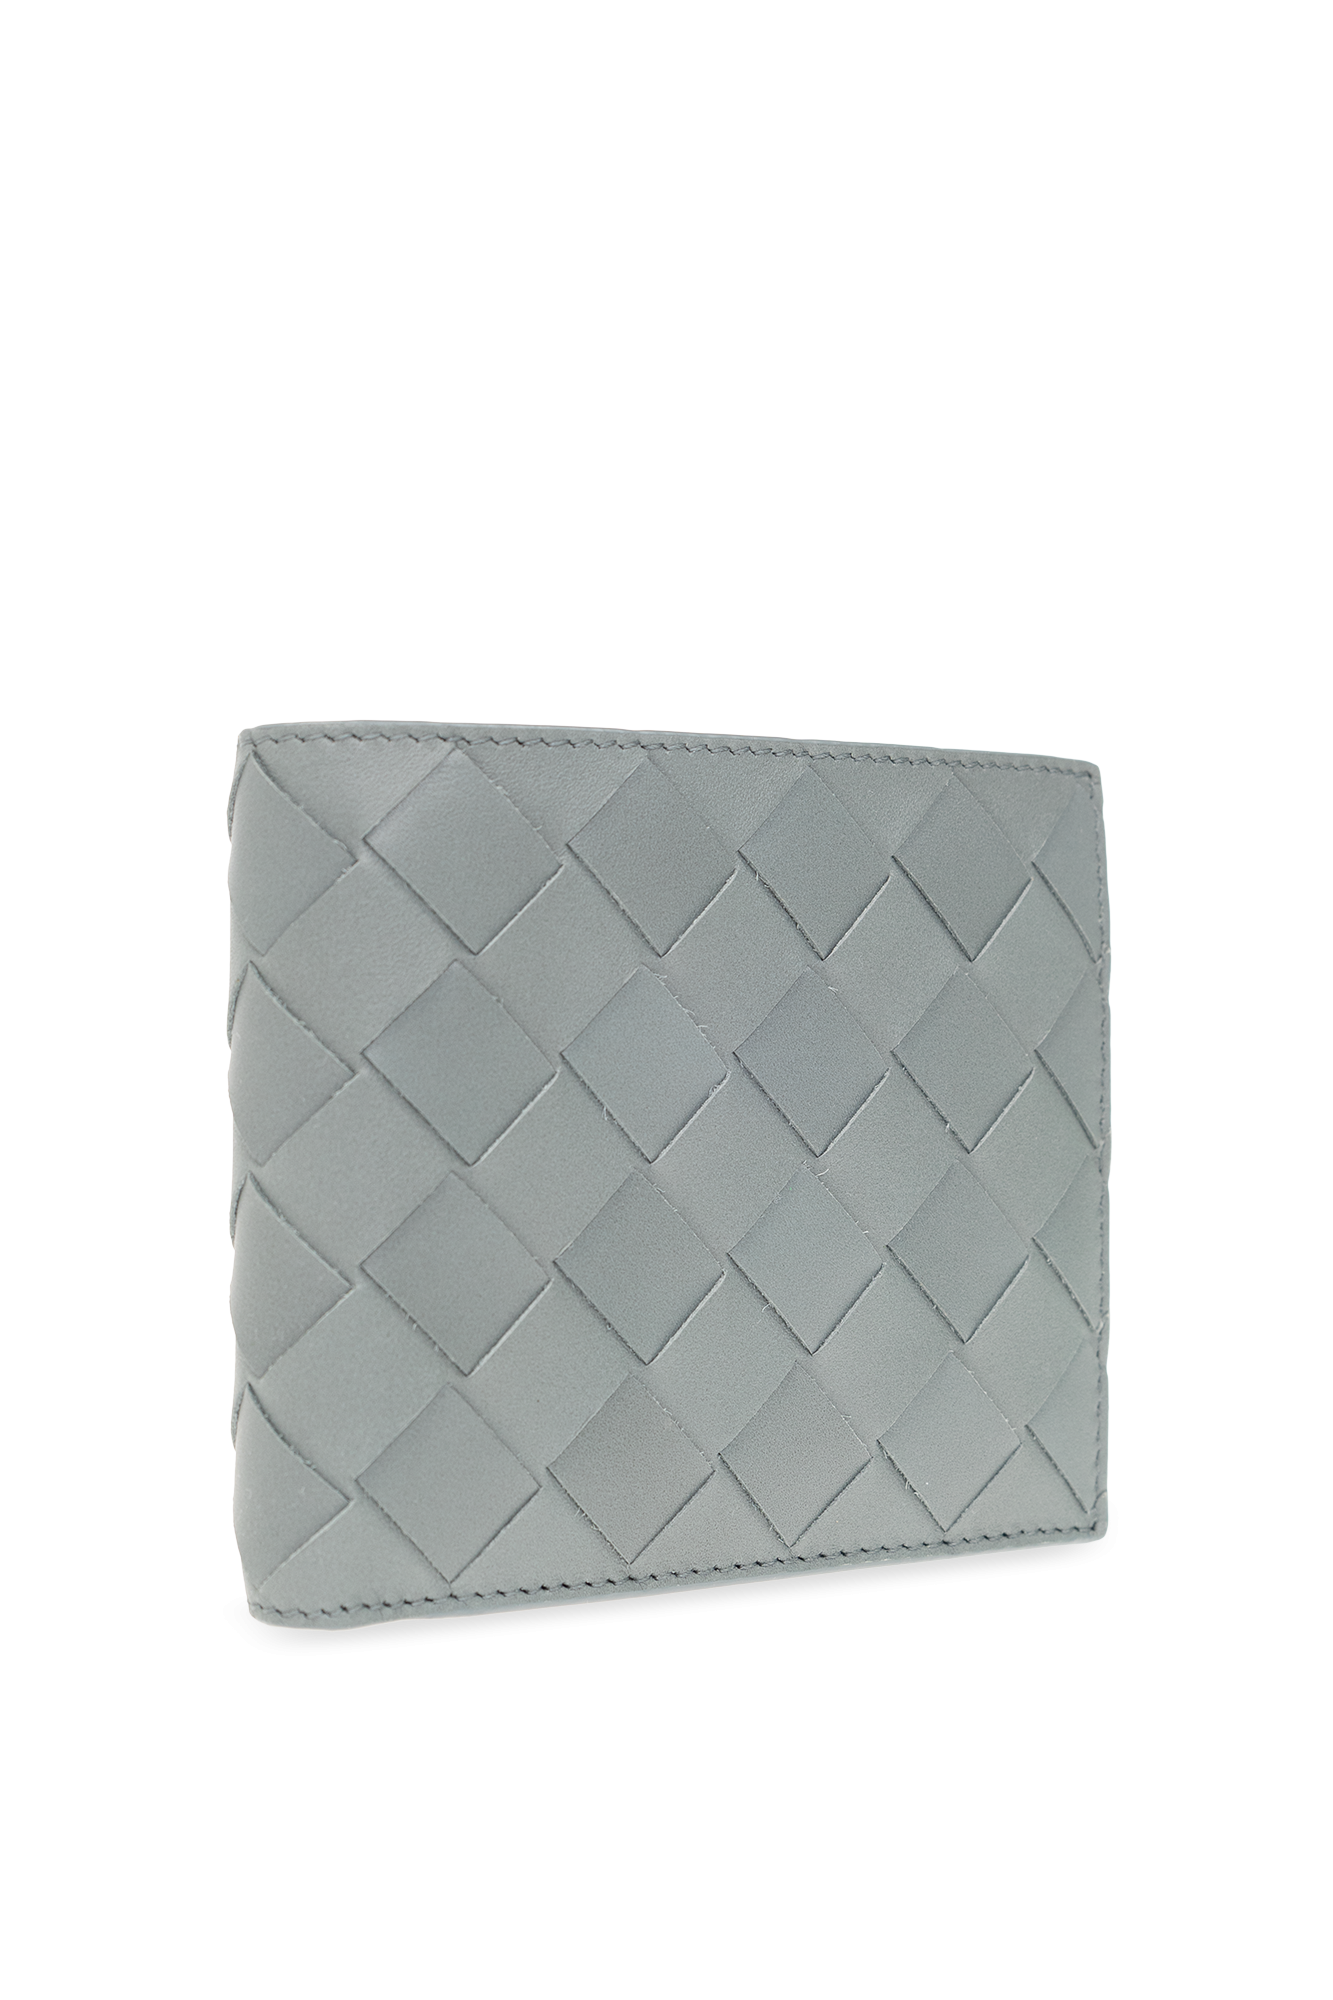 Bottega Veneta Woda folding wallet